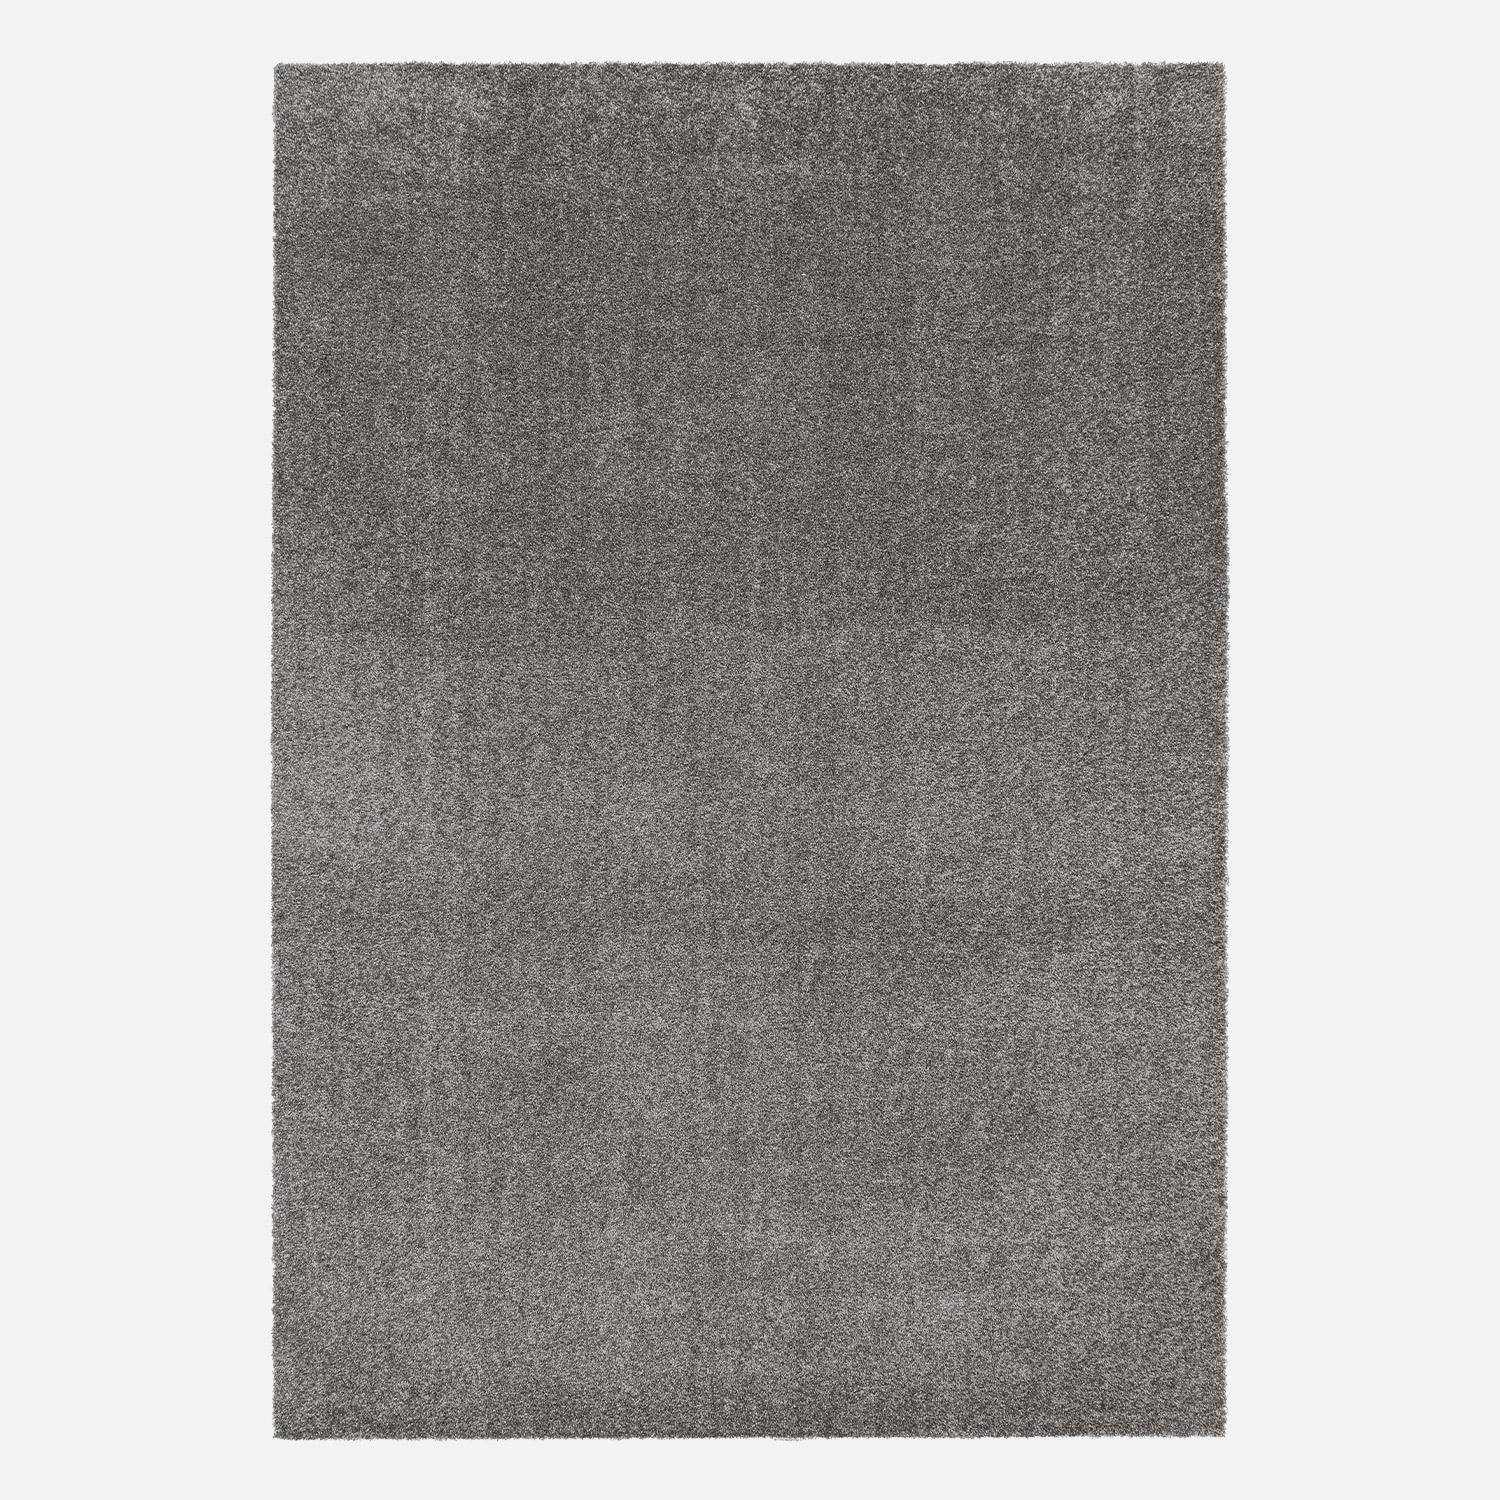 Moqueta interior de terciopelo rizado gris antracita, Lawrence, 160x230 cm,sweeek,Photo3